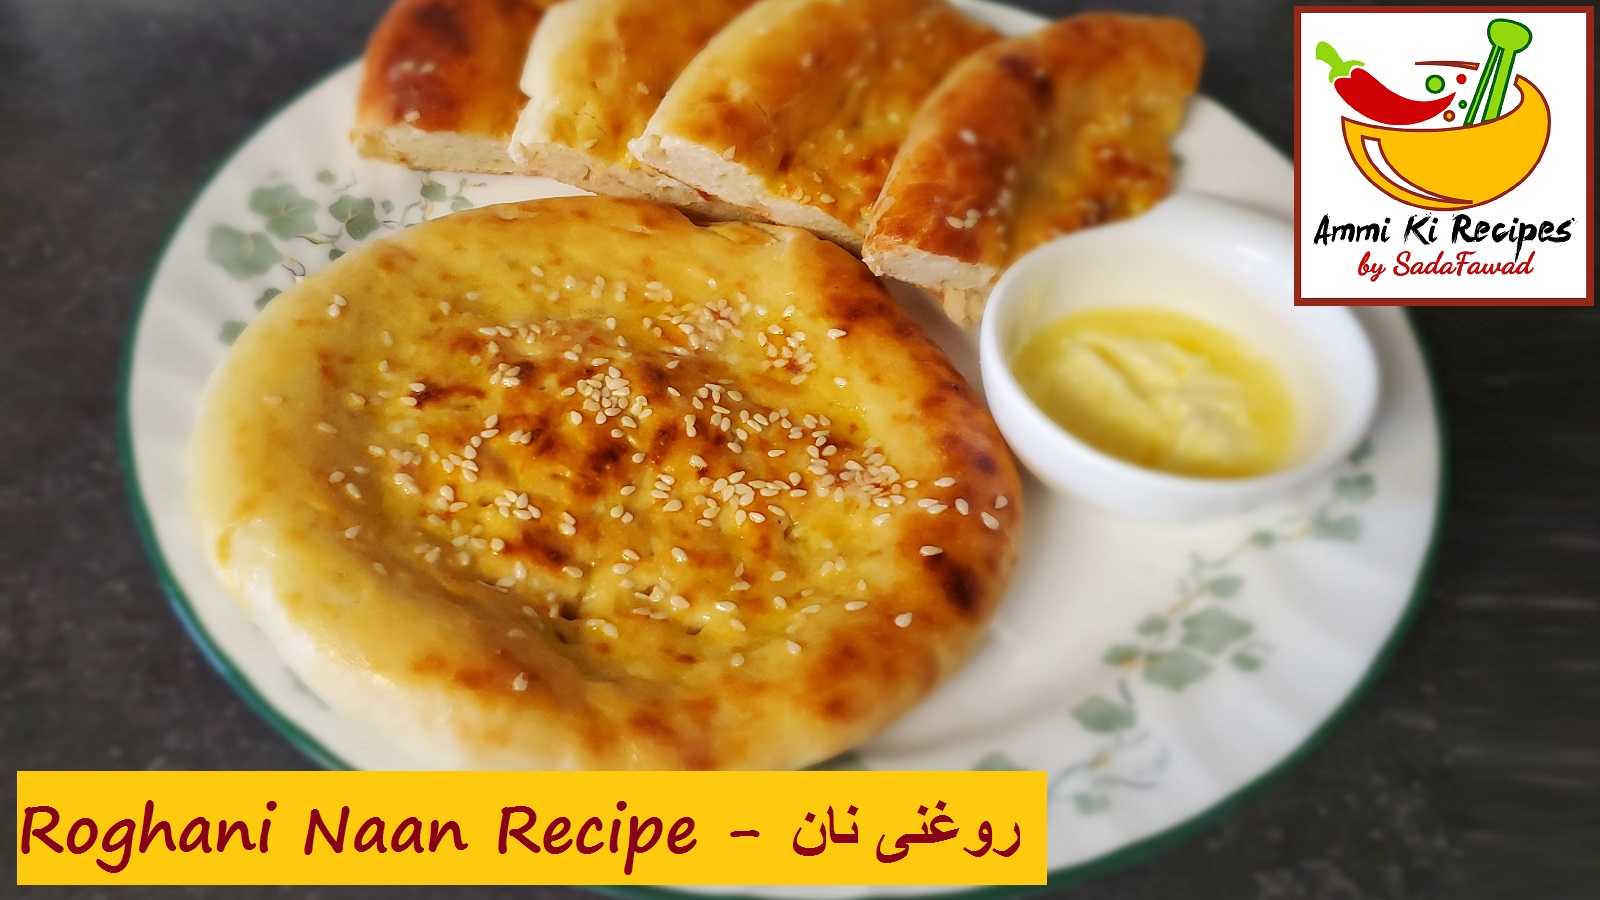 Roghani Naan Recipe – روغنی نان